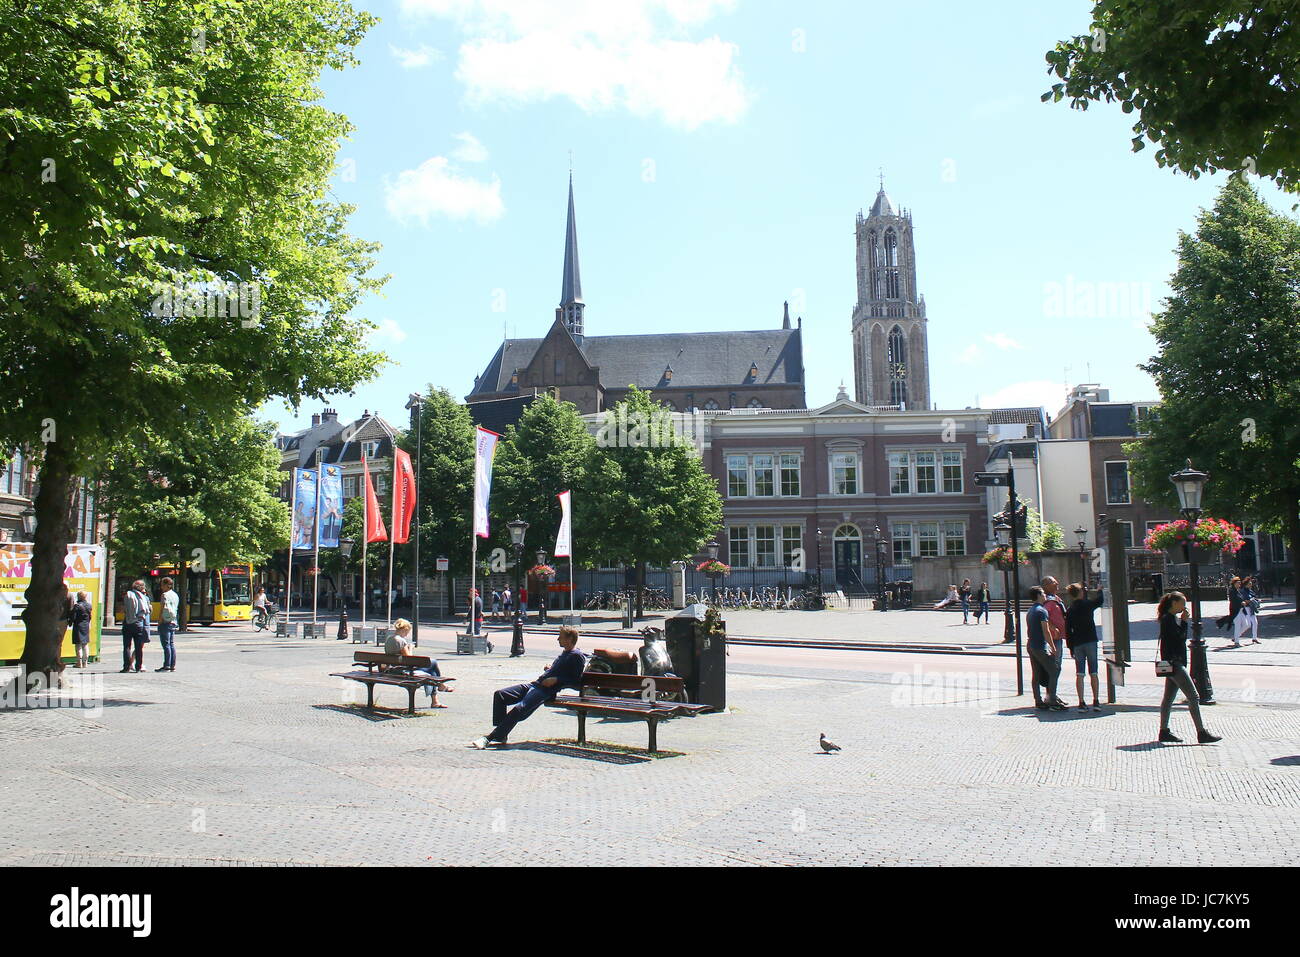 Janskerkhof medievale piazza nel centro di Utrecht, Paesi Bassi, guardando verso la Chiesa del Duomo e la torre. Foto Stock